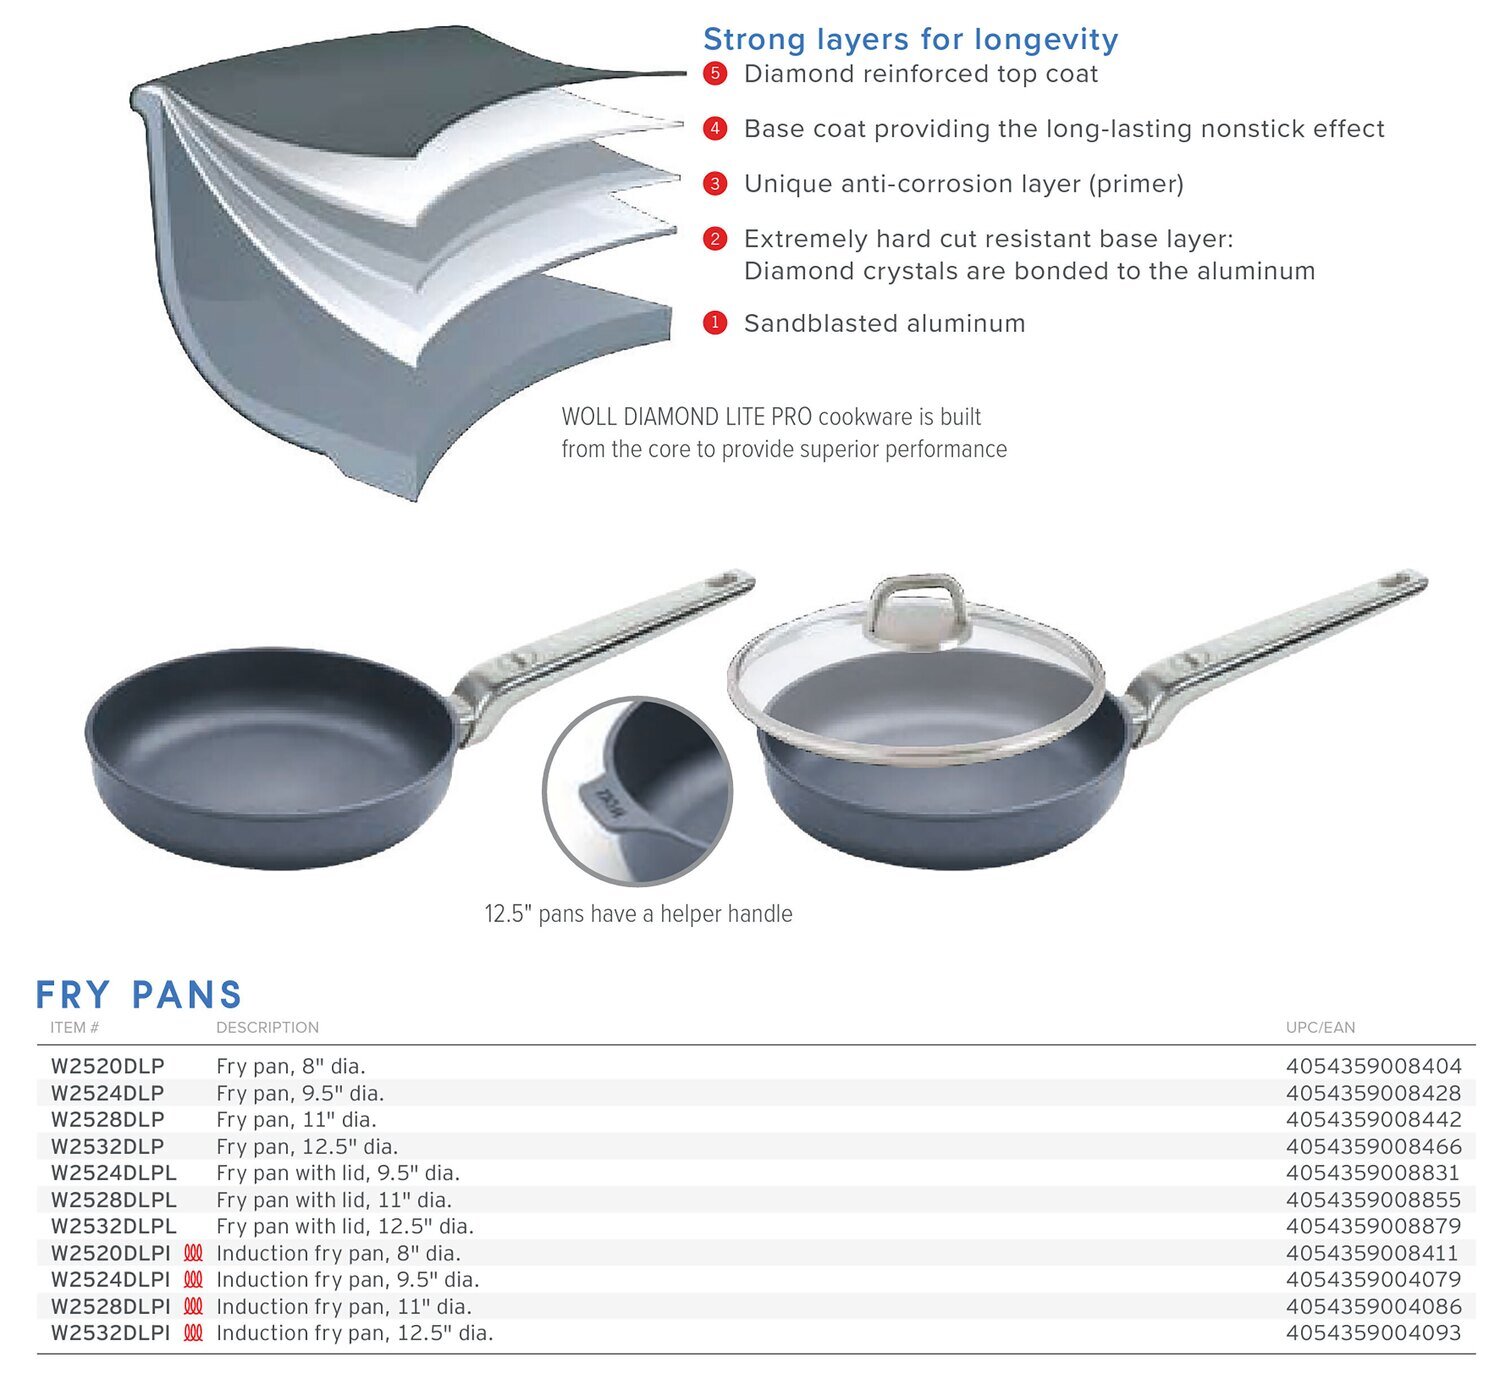 Frieling Diamond Lite Pro Fry Pan with Lid 9.5" W2524DLPL